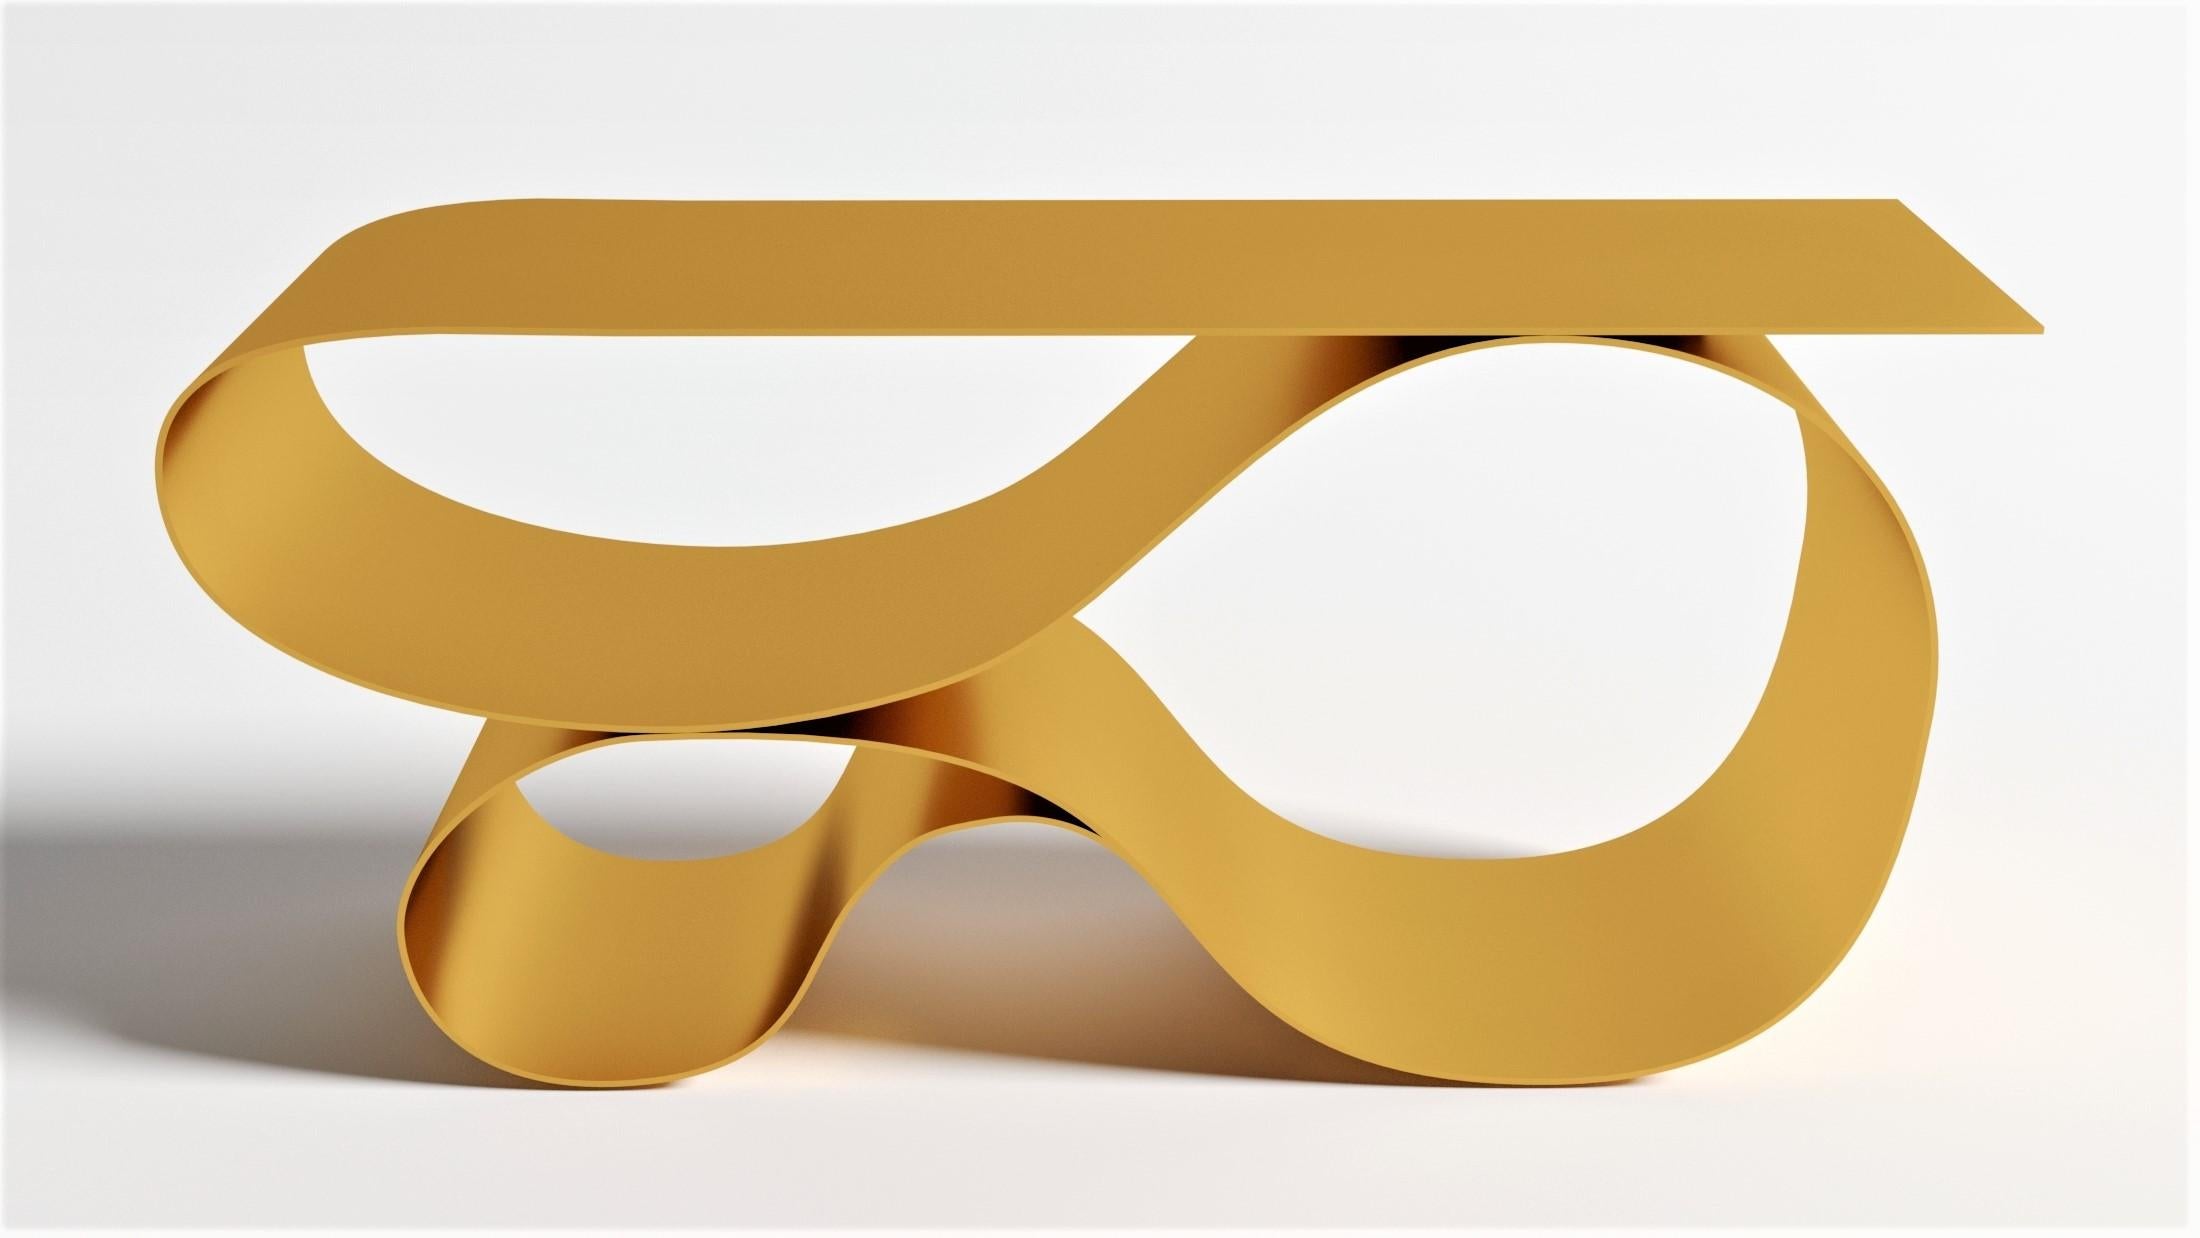 Console Whorl en aluminium revêtu de poudre d'or de Neal Aronowitz Design
Dimensions : D 43,2 x L 160 x H 76,2 cm
Matériaux : Aluminium revêtu de poudre.
La taille, les couleurs et la finition peuvent être modifiées et personnalisées.

Une